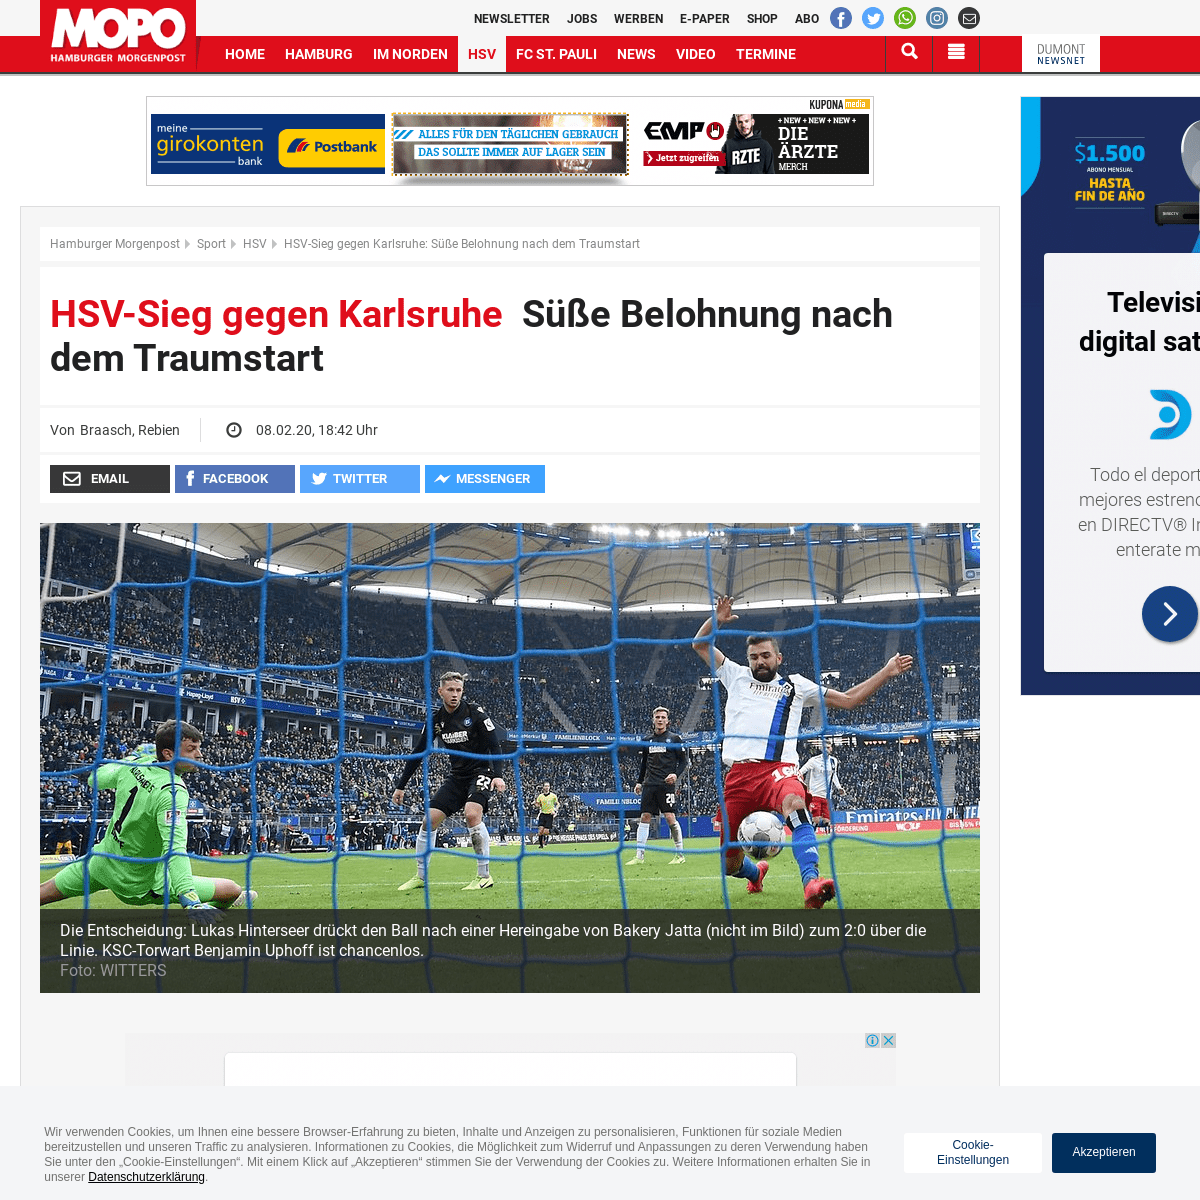 A complete backup of www.mopo.de/sport/hsv/hsv-sieg-gegen-karlsruhe-suesse-belohnung-nach-dem-traumstart-36207138